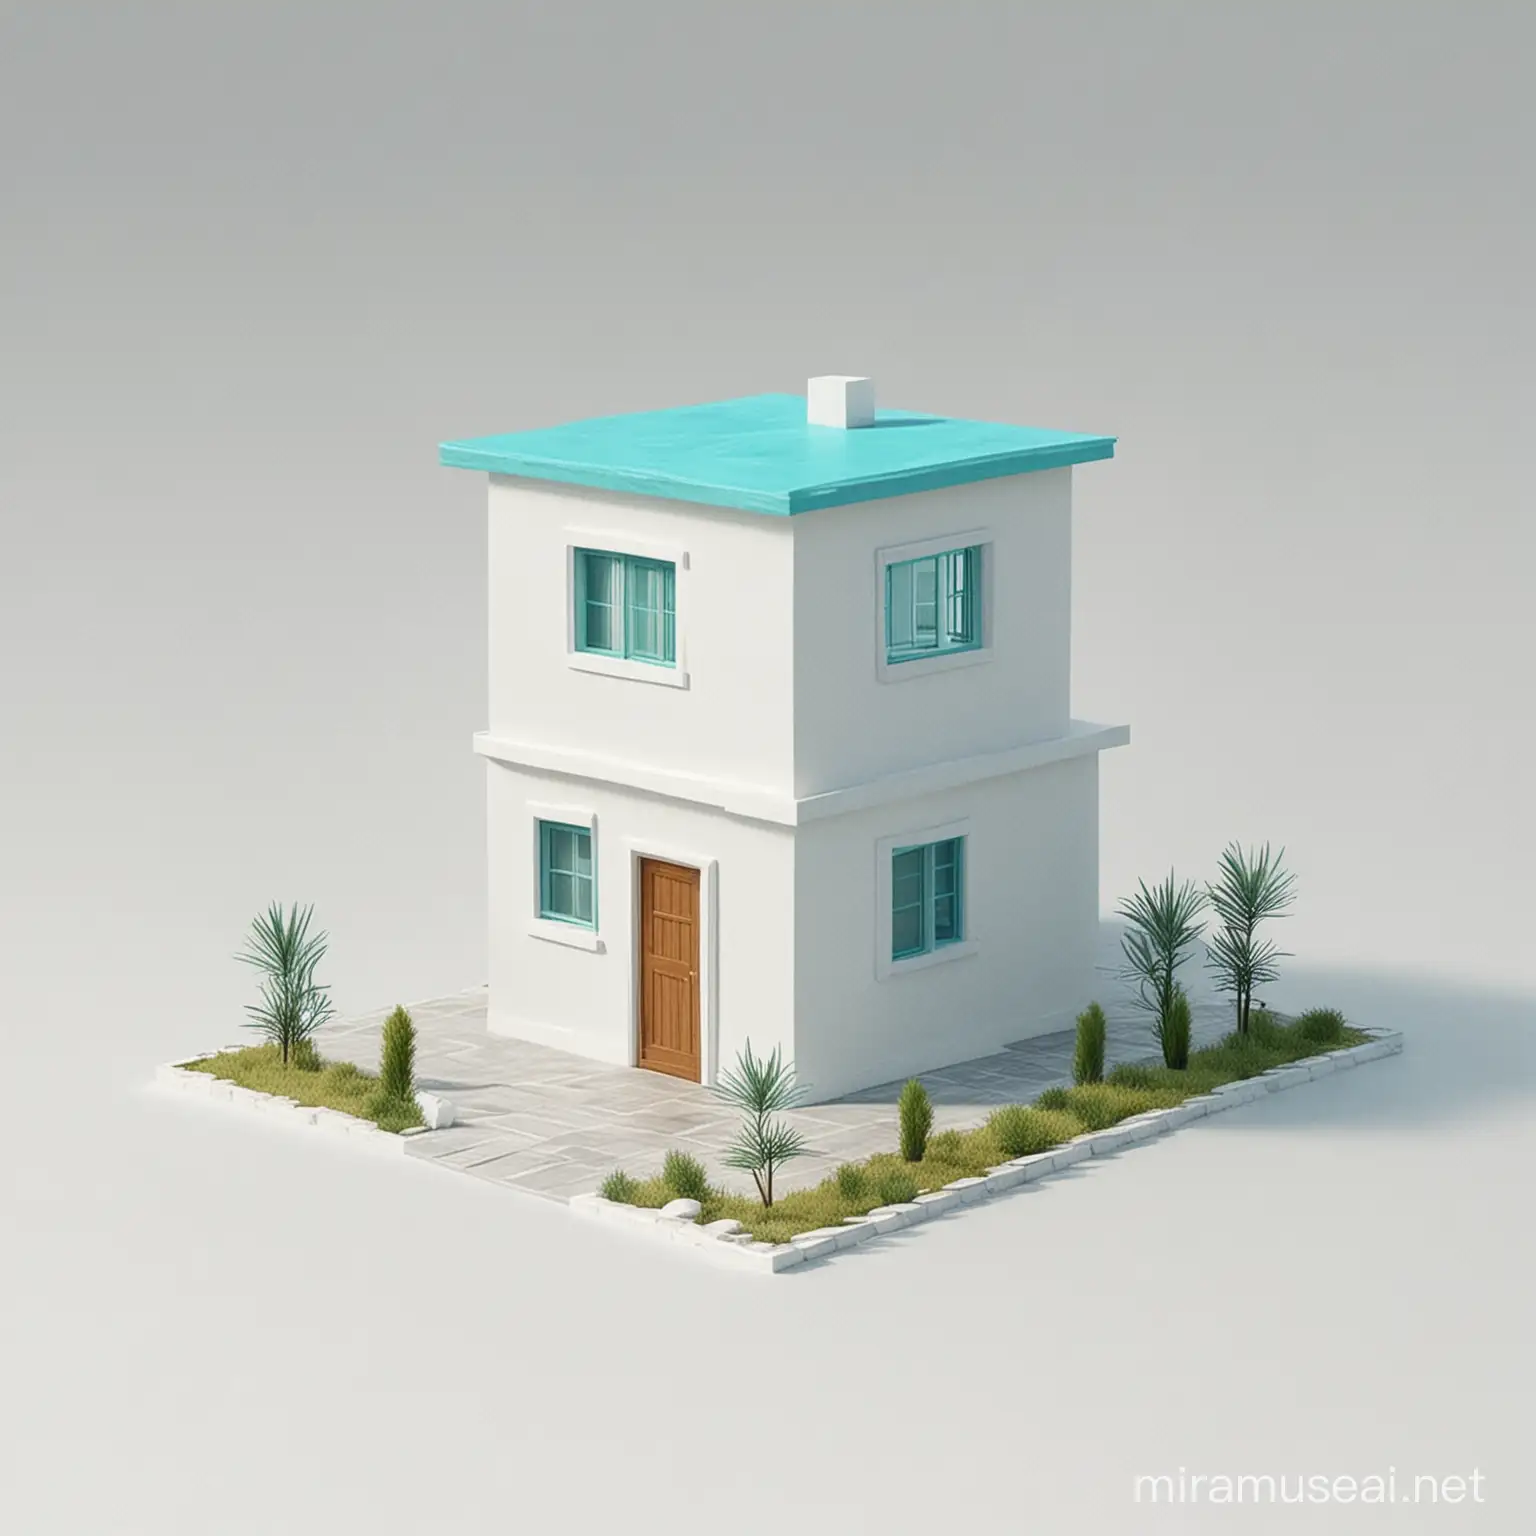 Casa cuadrada color turquesa  en animación 3d y fondo blanco